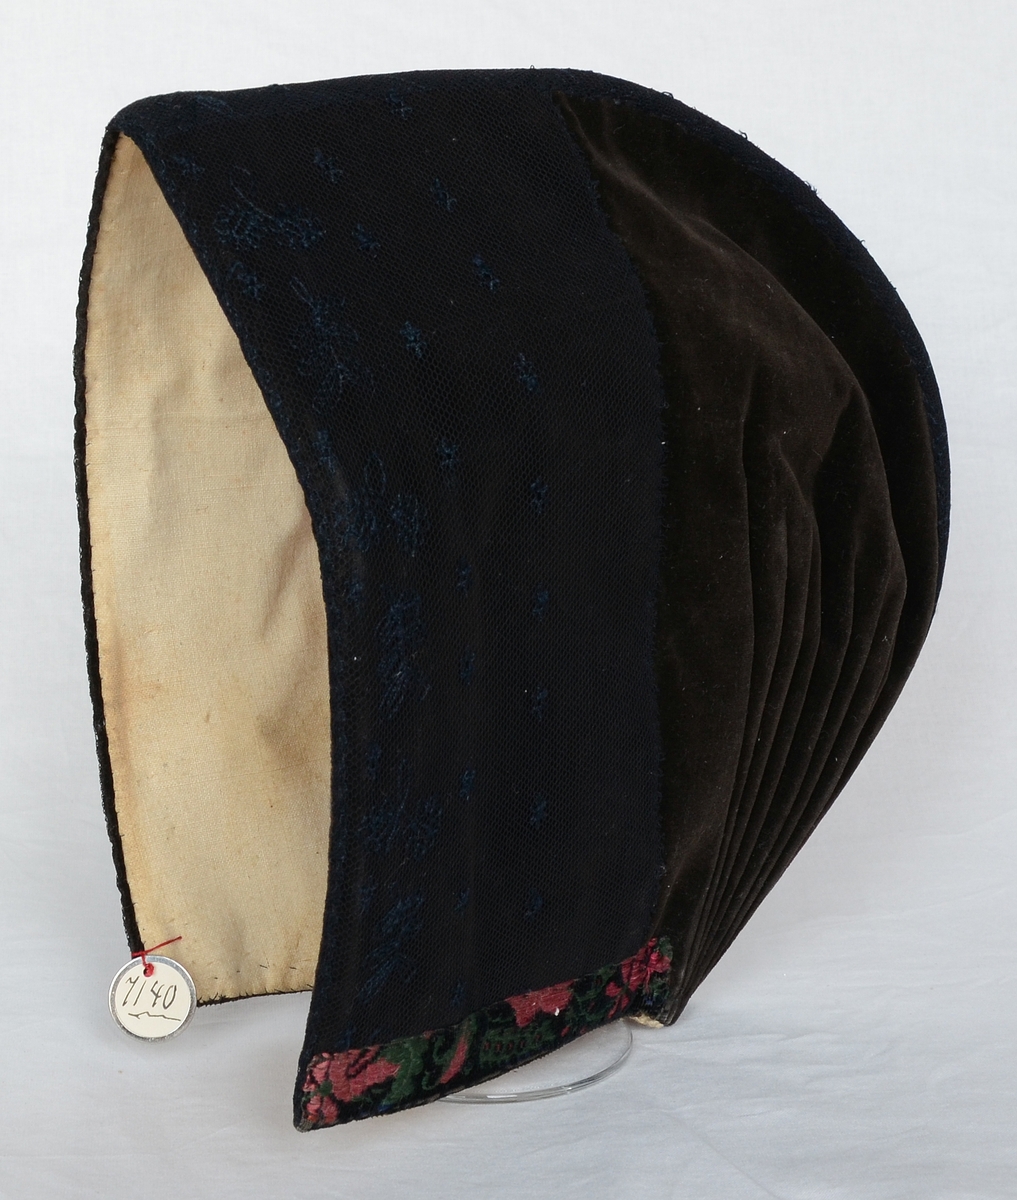 Mössa för kvinna, av brun sammet med kantband i grönt och rosa. Kallades "skreftamössa" och användes vid nattvardsgång.